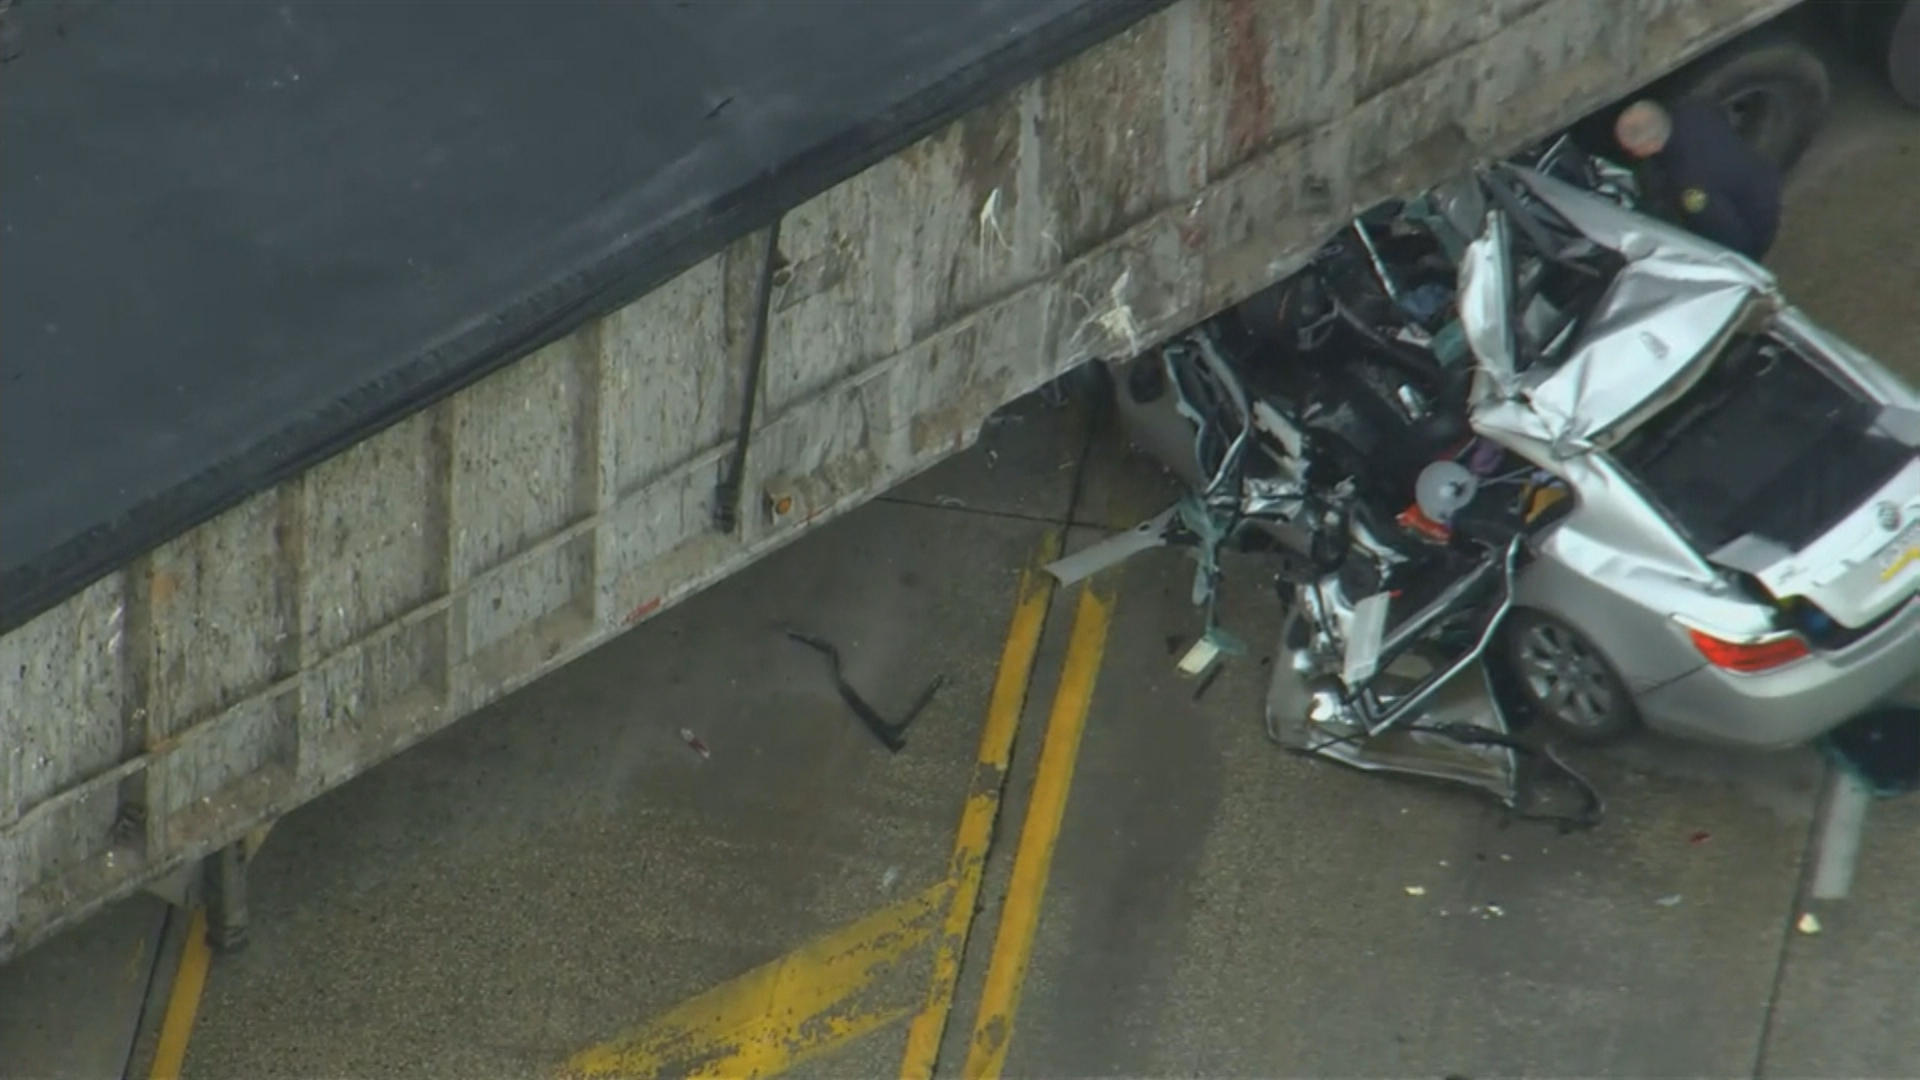 Multi-Vehicle Crash In Chester Near Commodore Barry Bridge Leaves Person Dead: Police